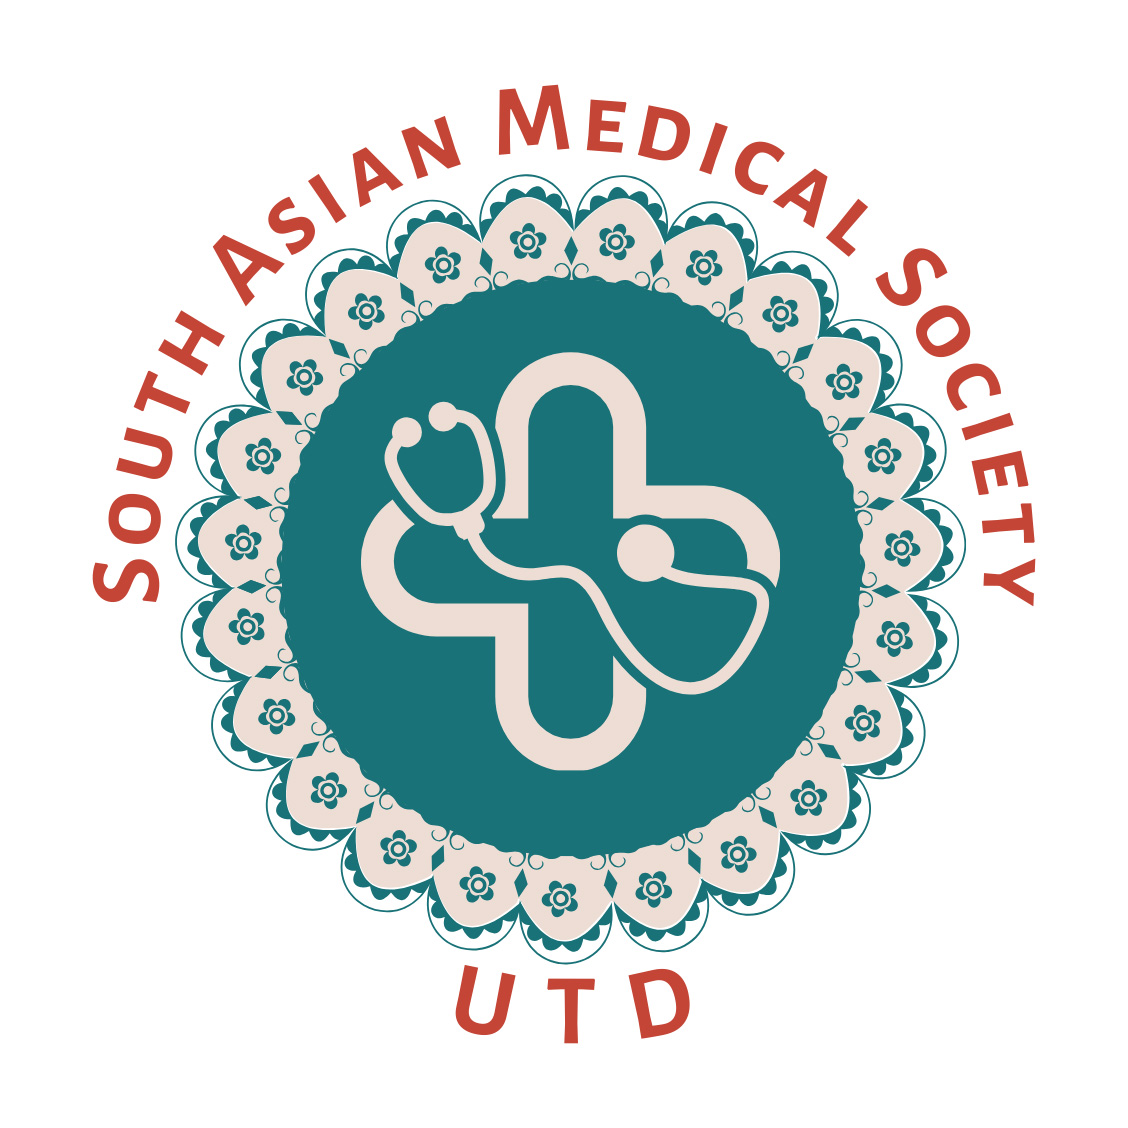 South Asian Medical Society (SAMS) logo